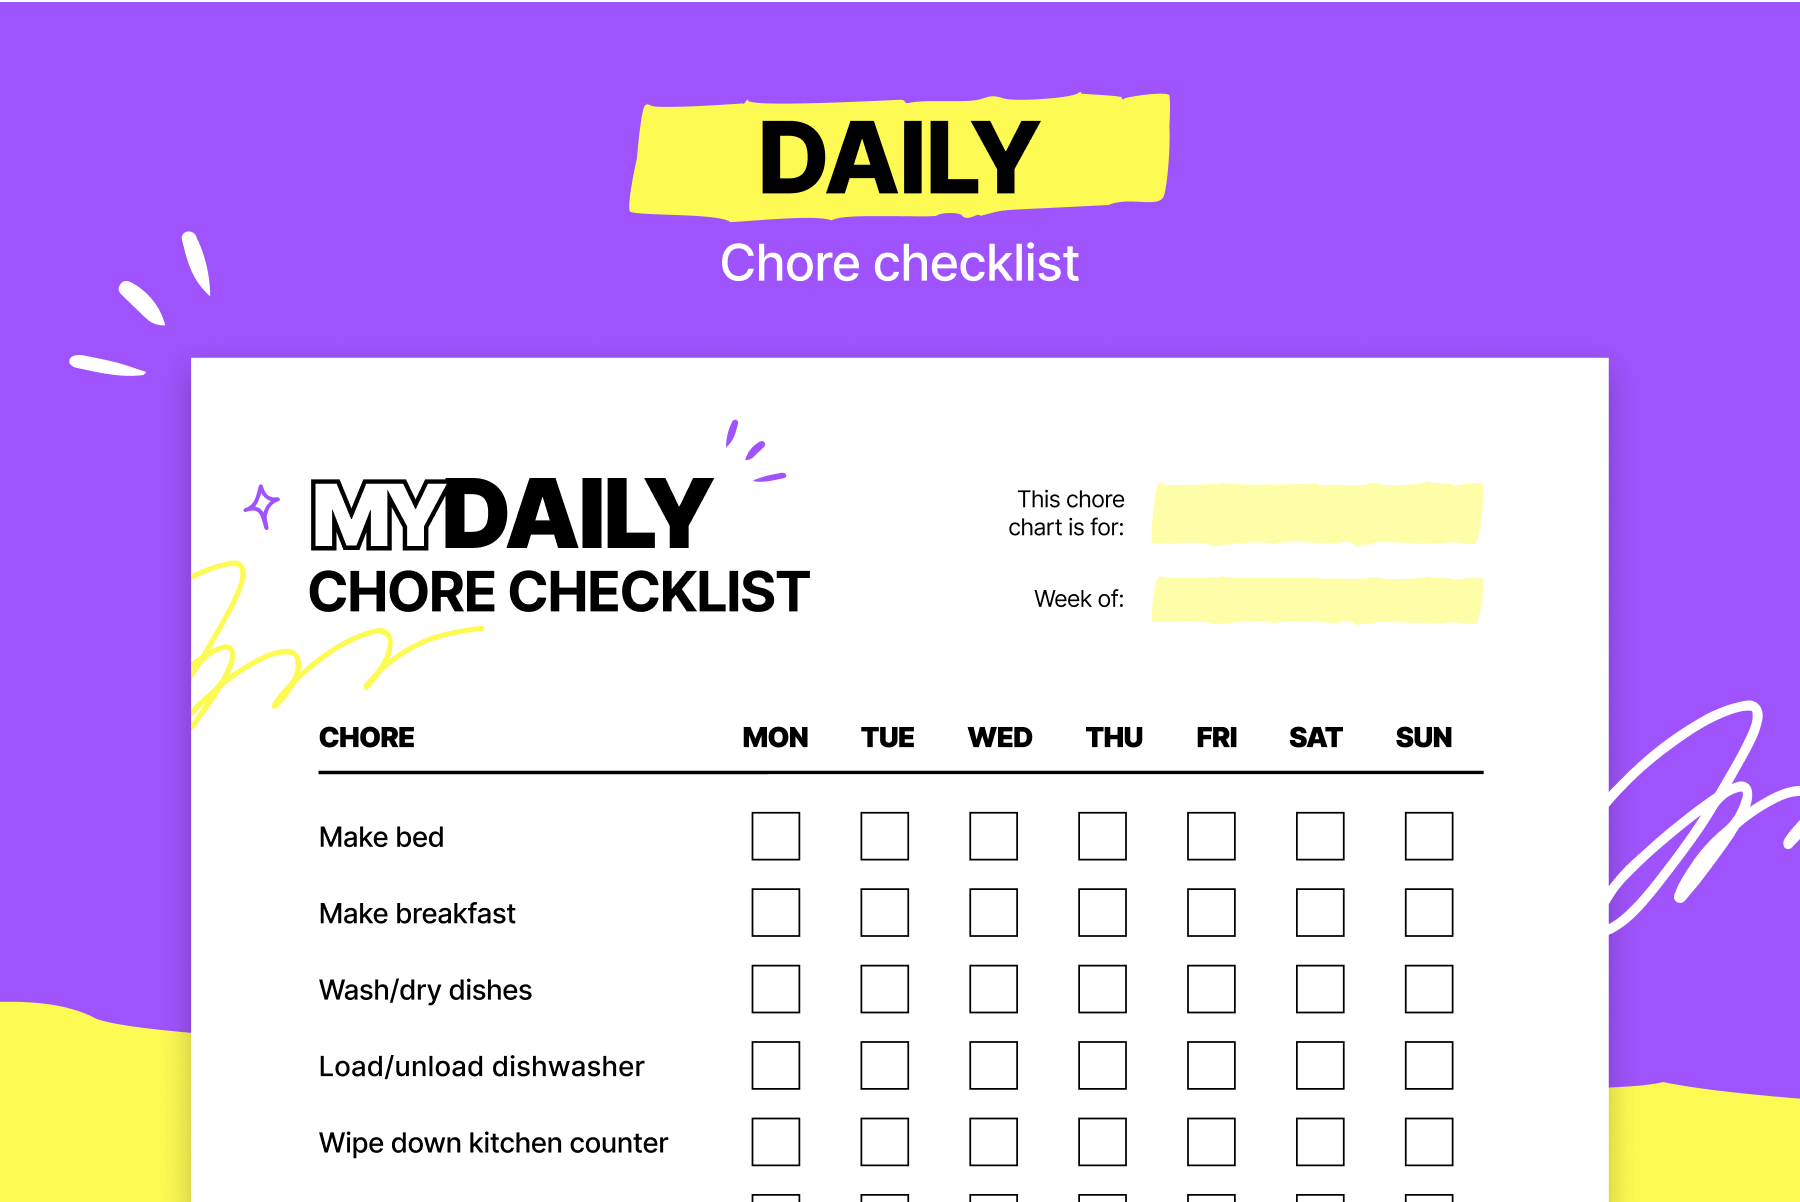 Daily chore chart checklist